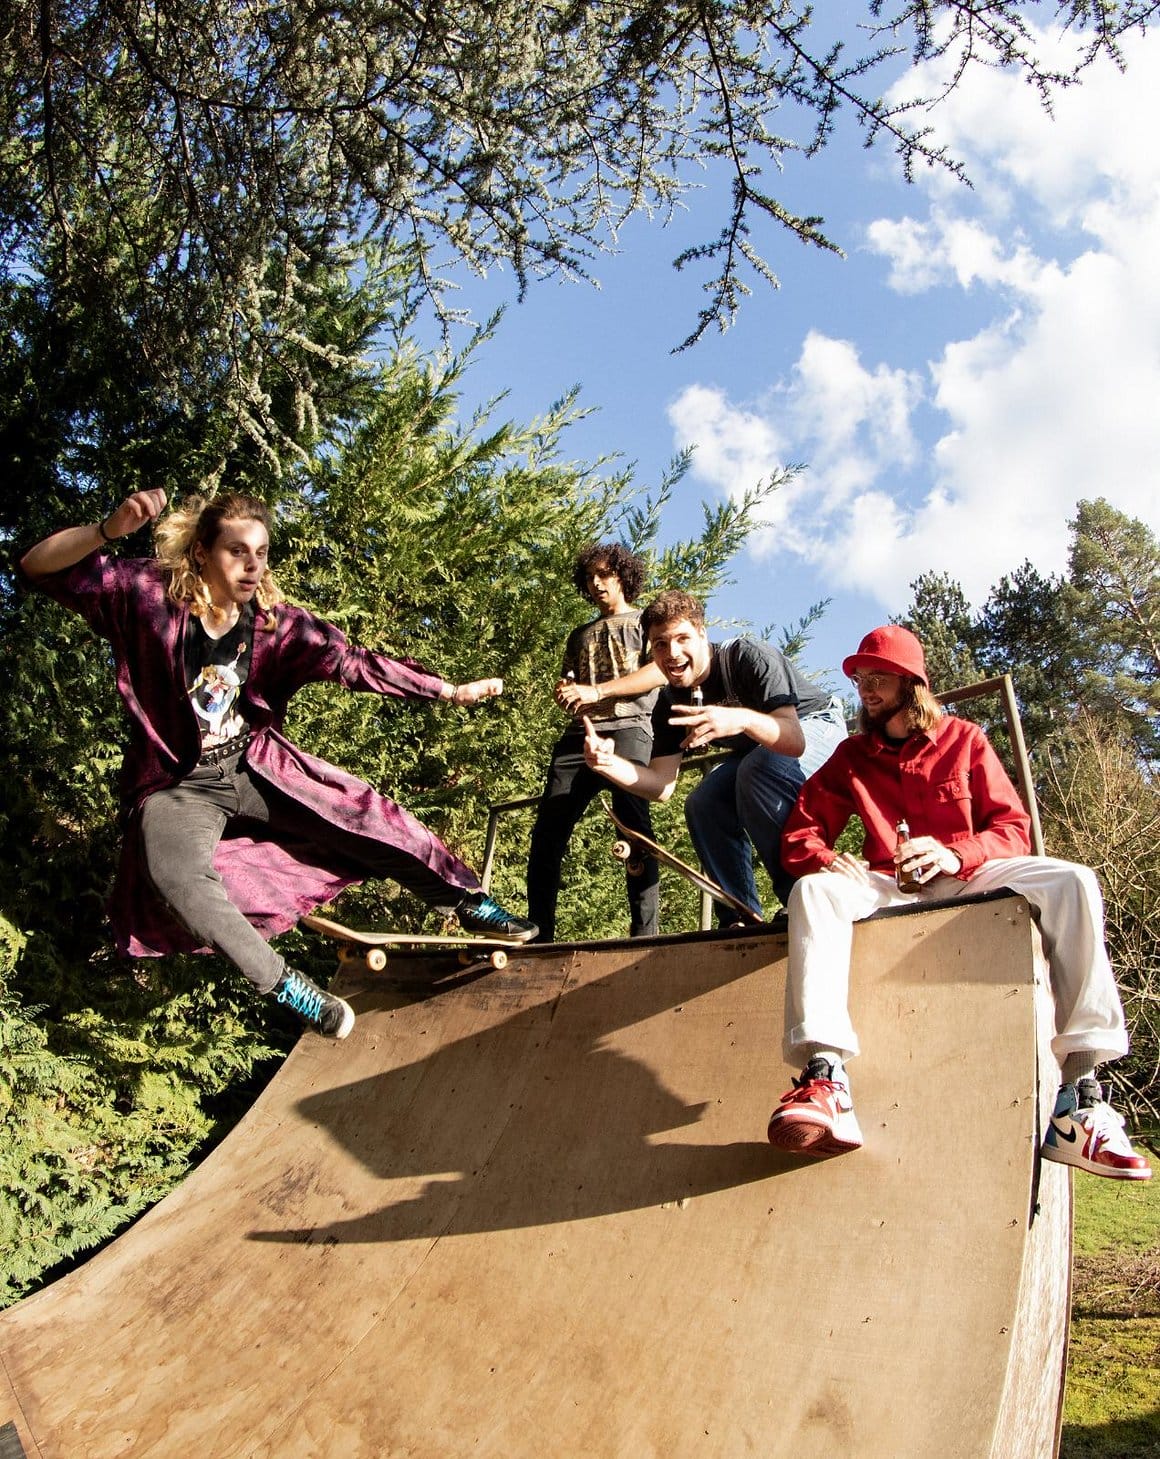 Les membres du groupe Entropie, Adam, Bertrand, Loan et Valentin, sont regroupés sur un tremplin de skateboard au soleil.